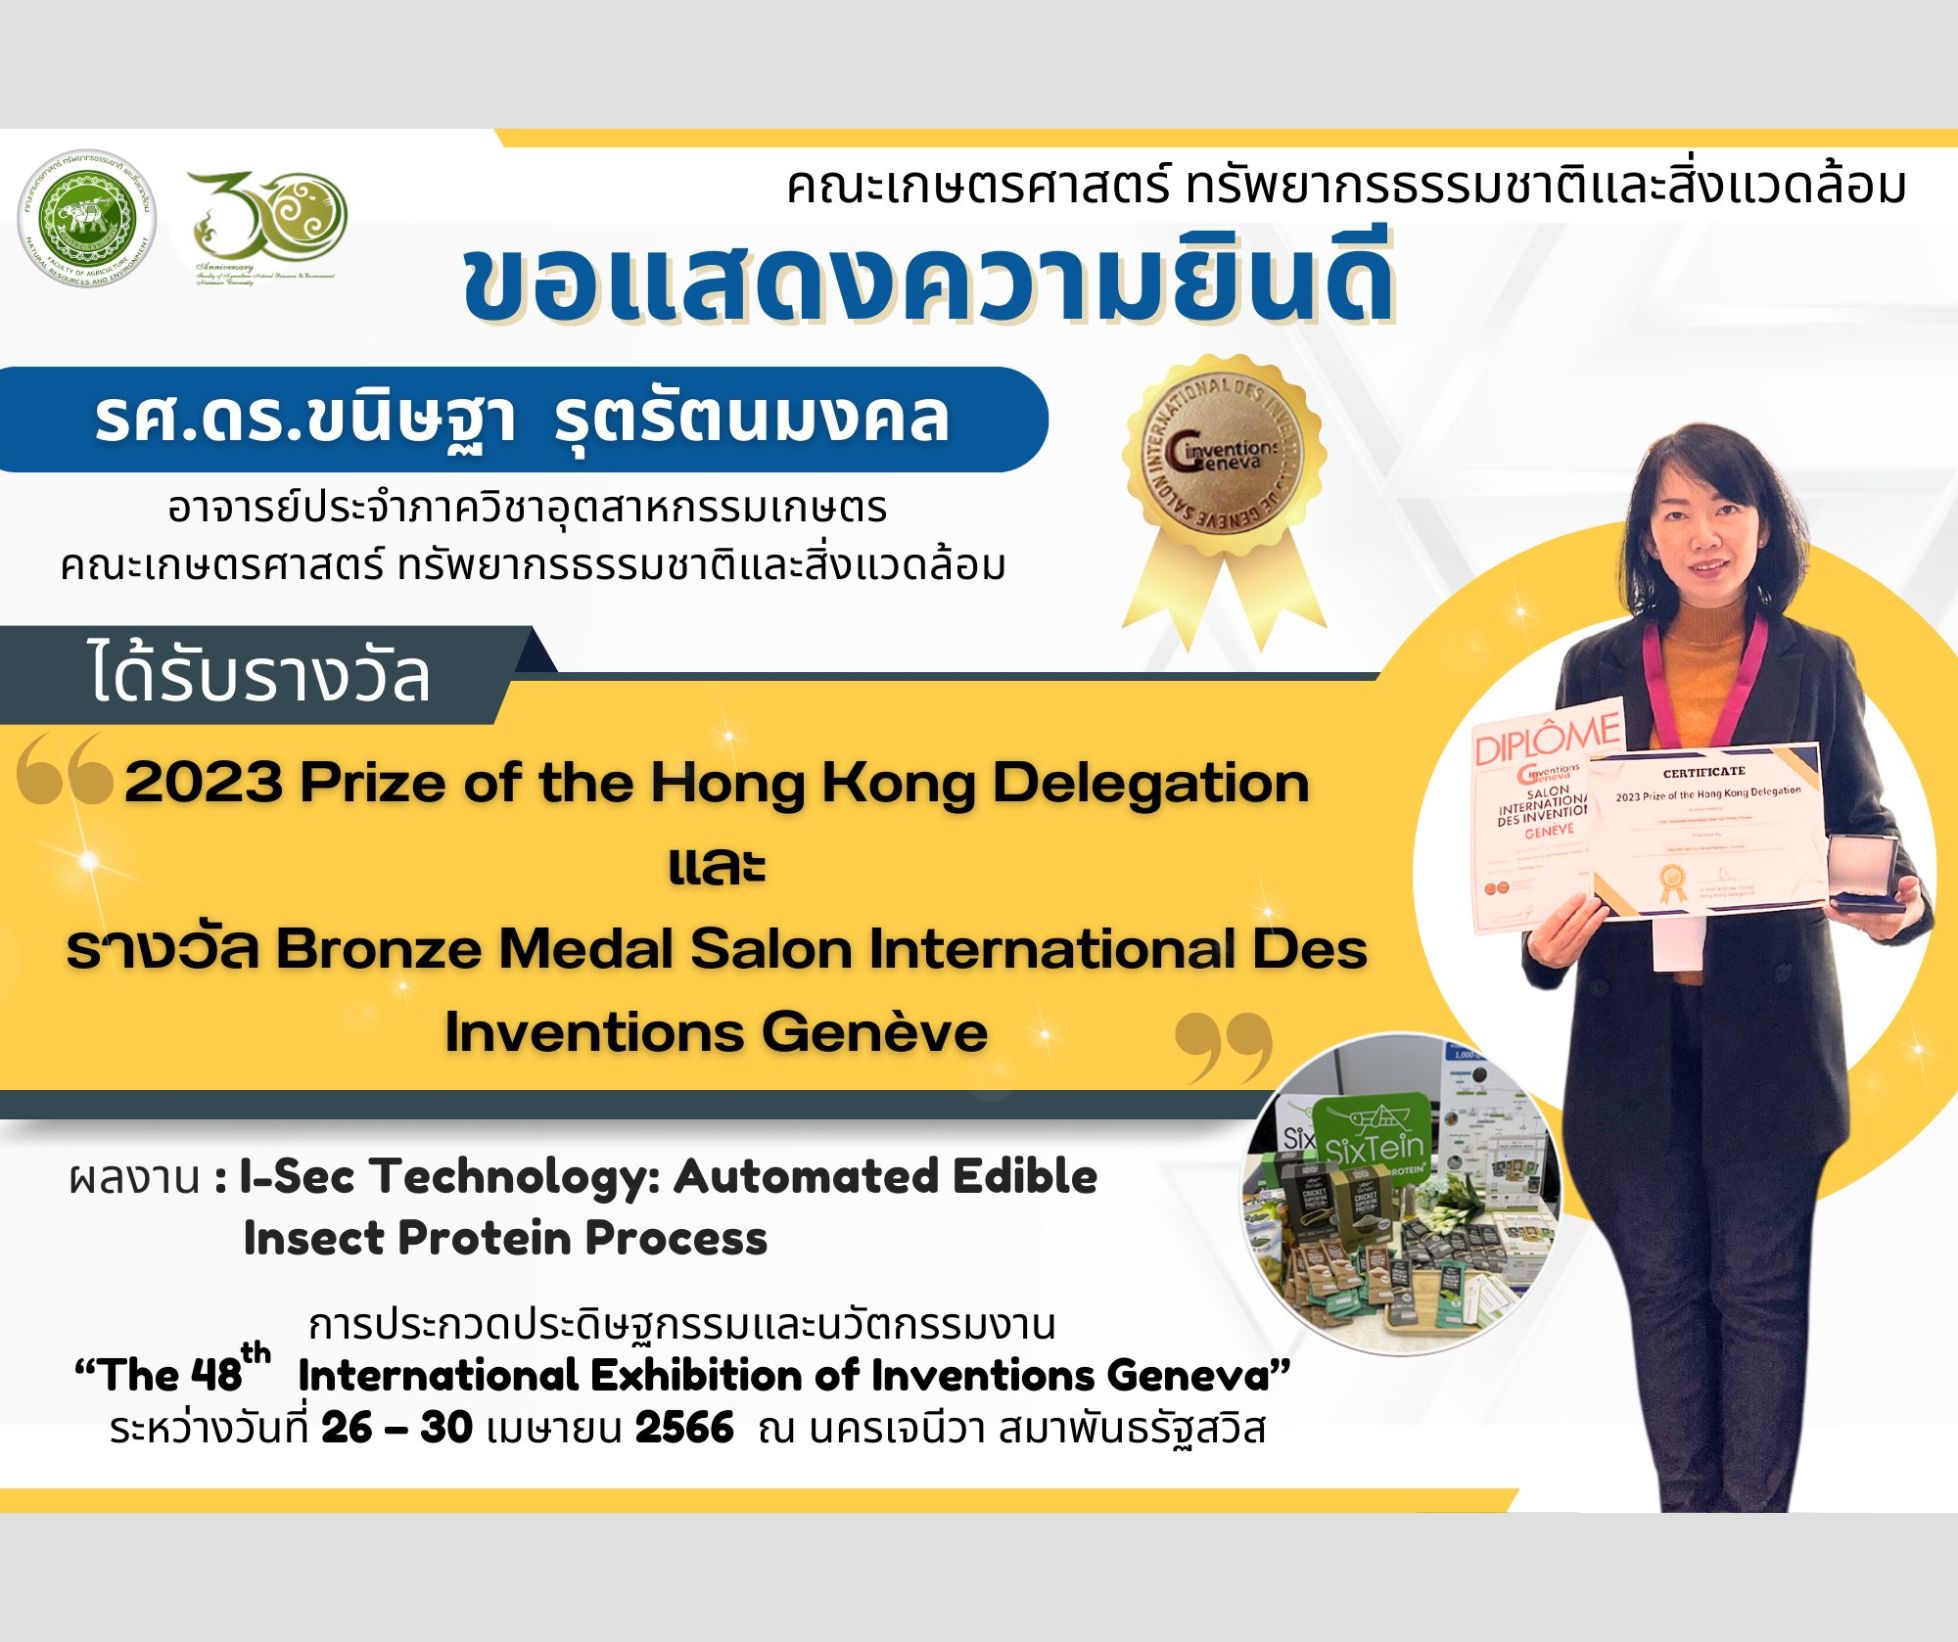 ขอแสดงความยินดีกับ รศ.ดร.ขนิษฐา รุตรัตนมงคล ในโอกาสได้รับรางวัล 2023 Prize of the Hong Kong Delegation และ รางวัล Bronze Medal Salon International Des Inventions Genève